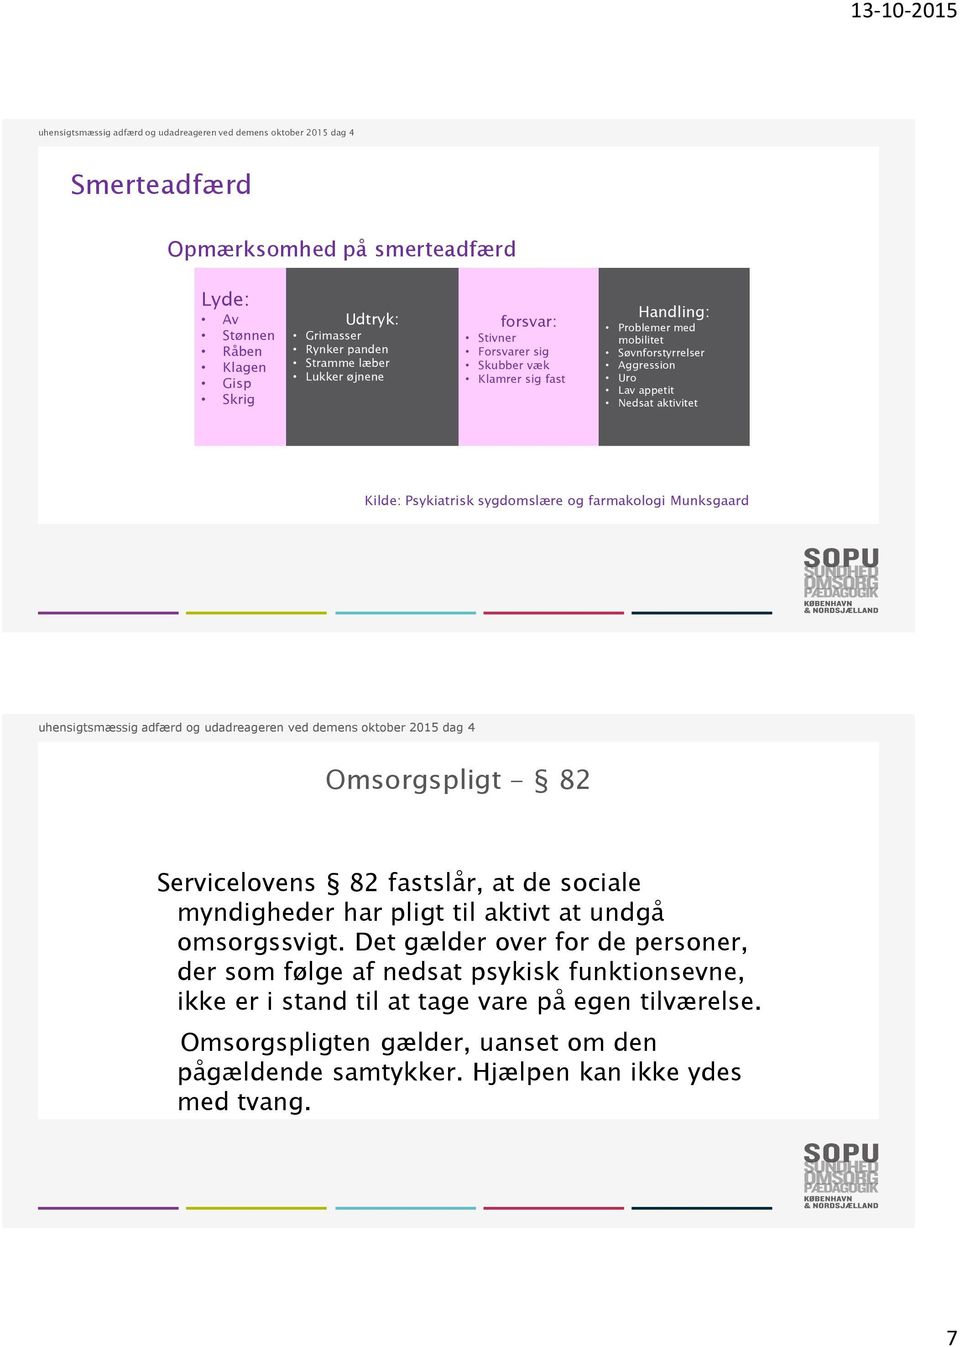 Munksgaard Omsorgspligt - 82 Servicelovens 82 fastslår, at de sociale myndigheder har pligt til aktivt at undgå omsorgssvigt.